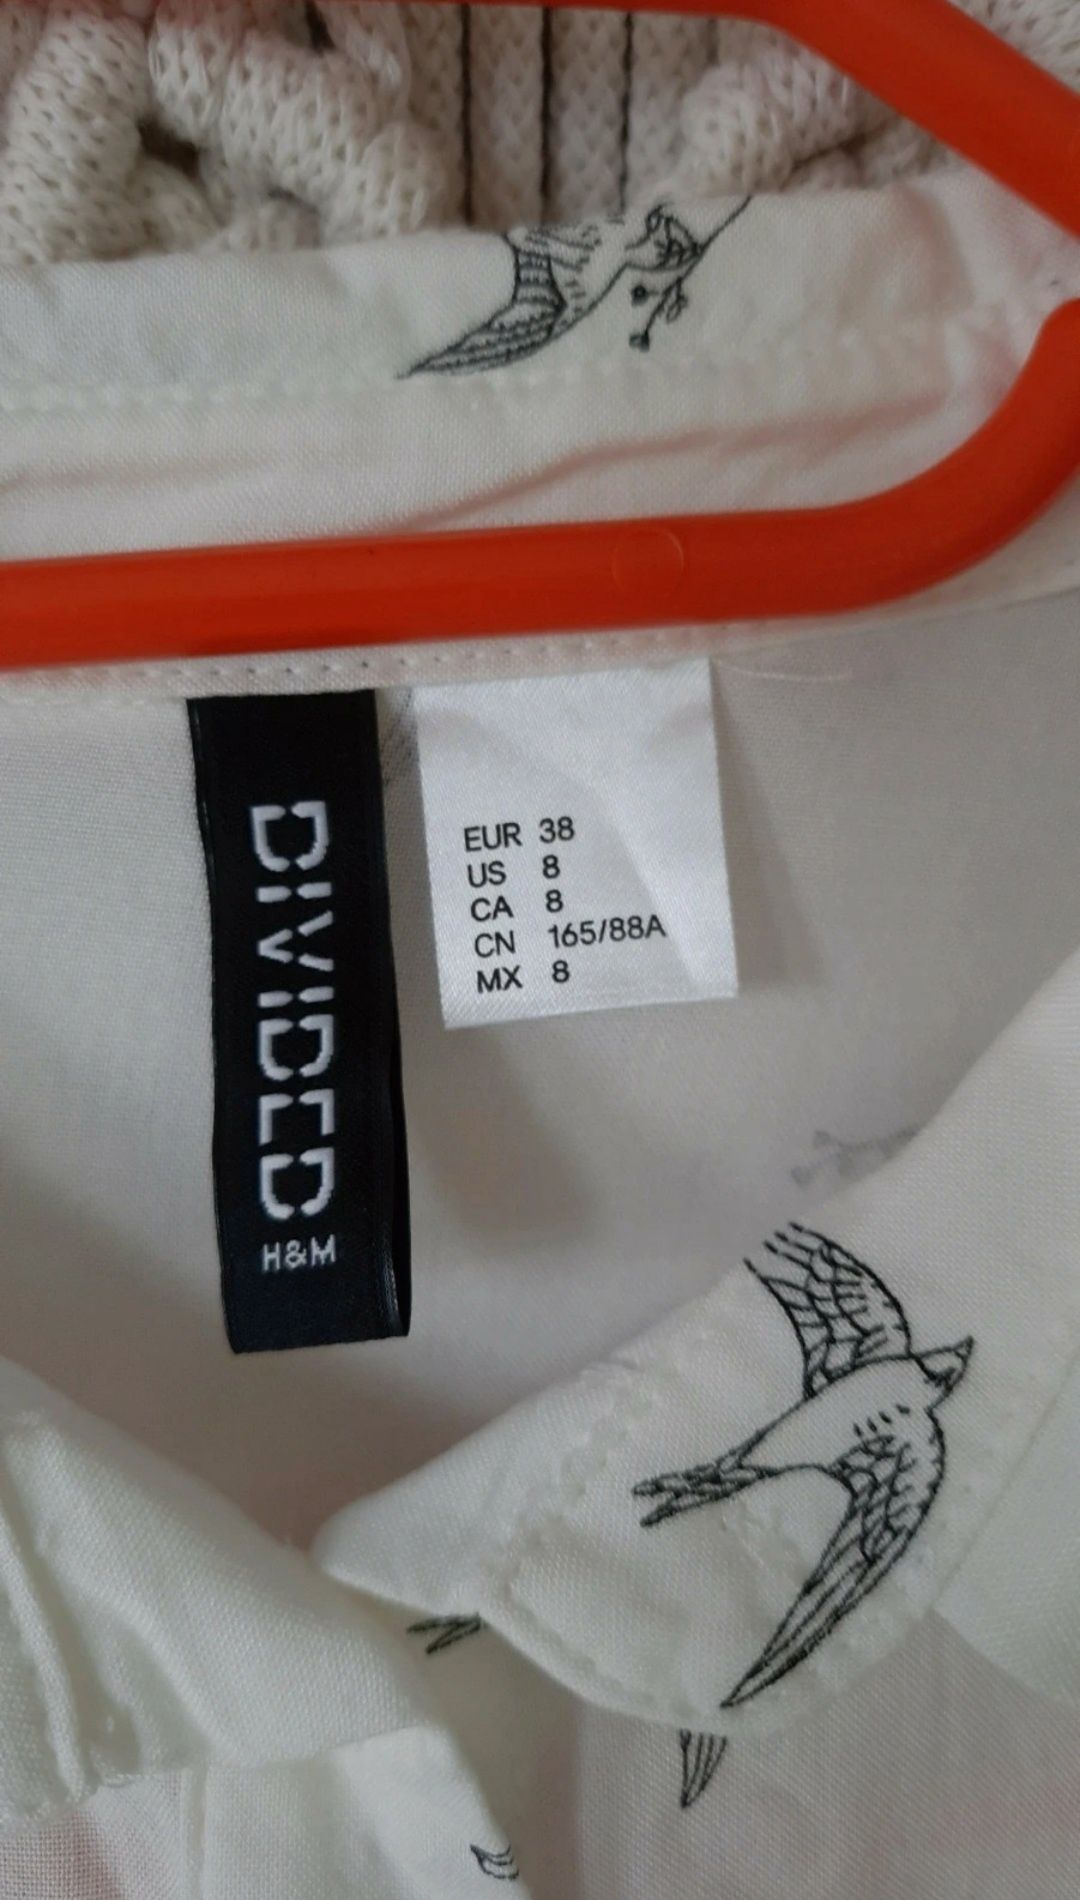 H&M koszula wiskozowa w jaskółki M/38 ecru